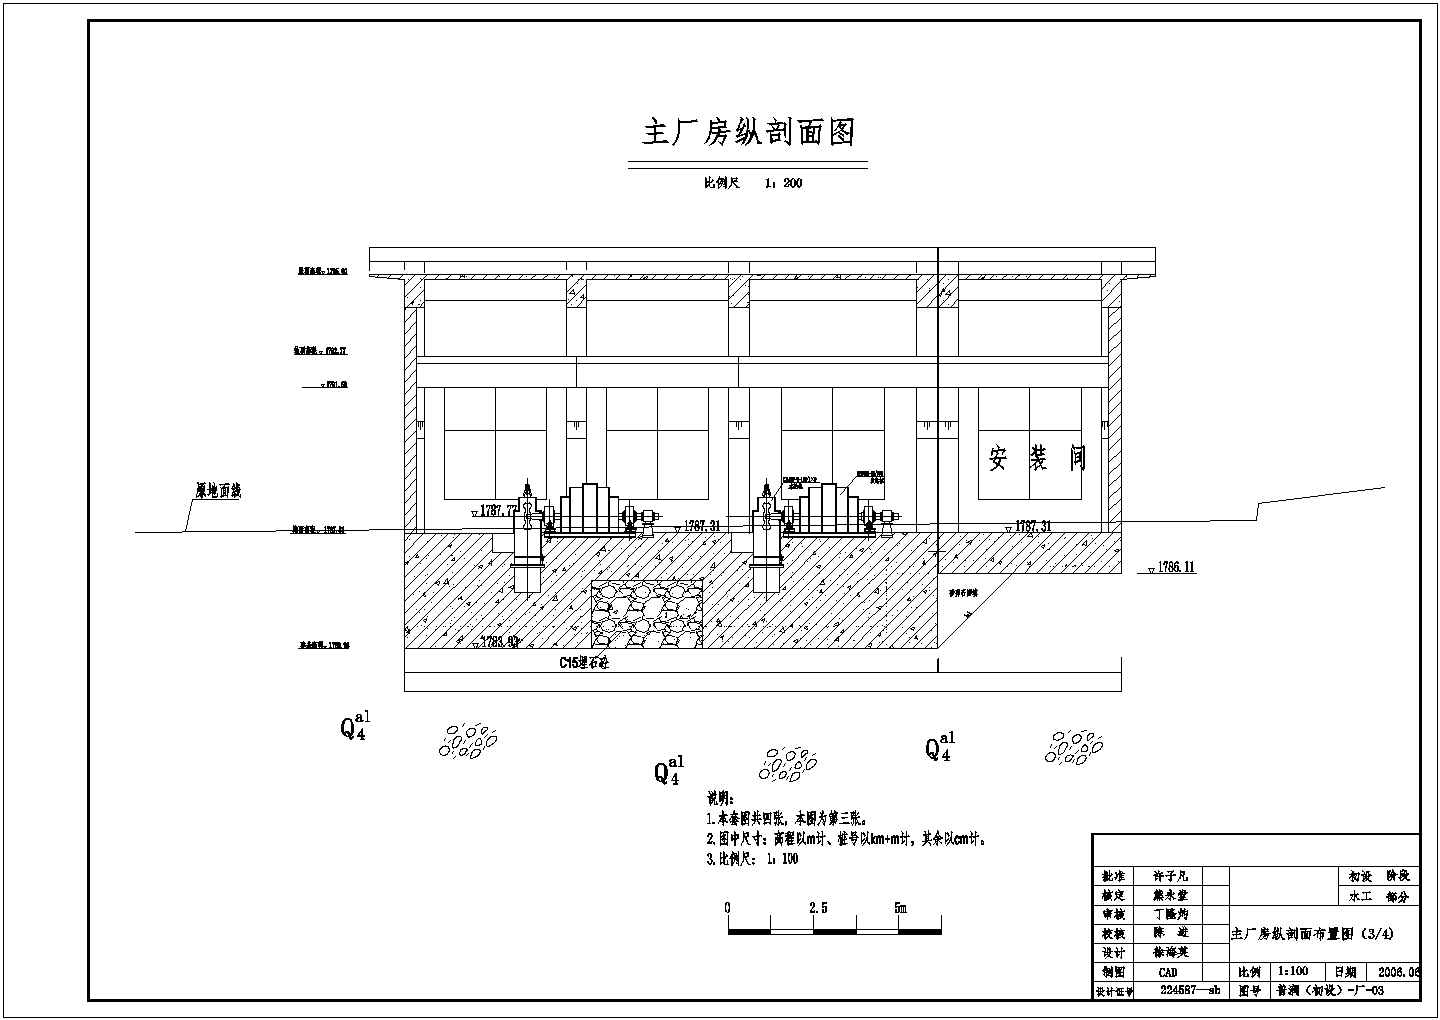 九龙县普润电站发电厂房结构布置图